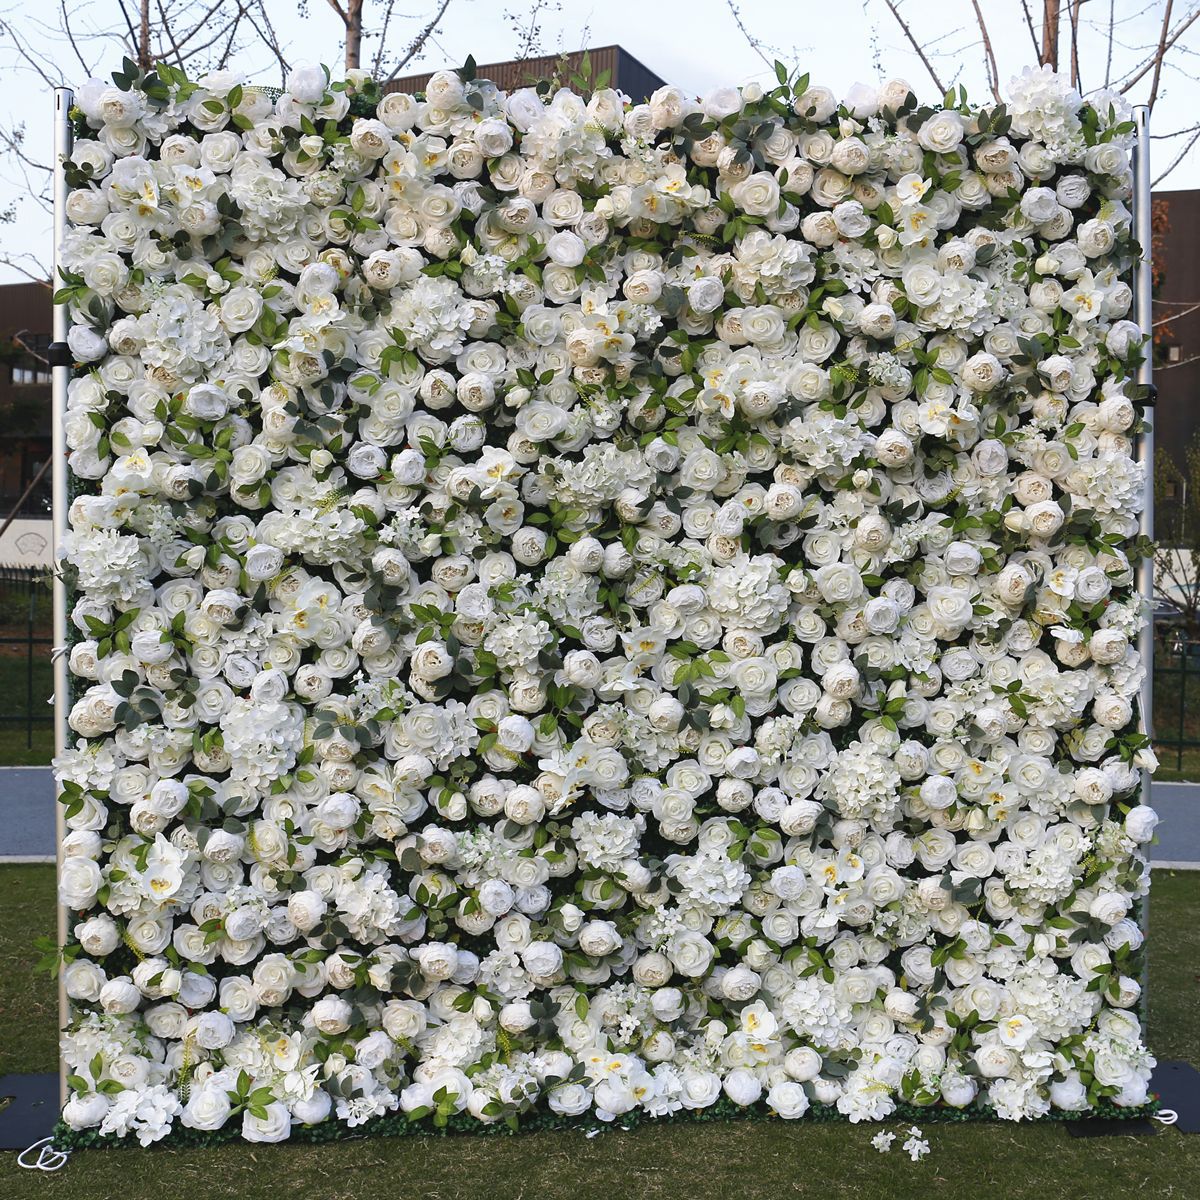 Wite doek ûnderkant blom muorre eftergrûn Wedding simulaasje blom Wedding mall finster dekoraasje eftergrûn pioen bloem muorre